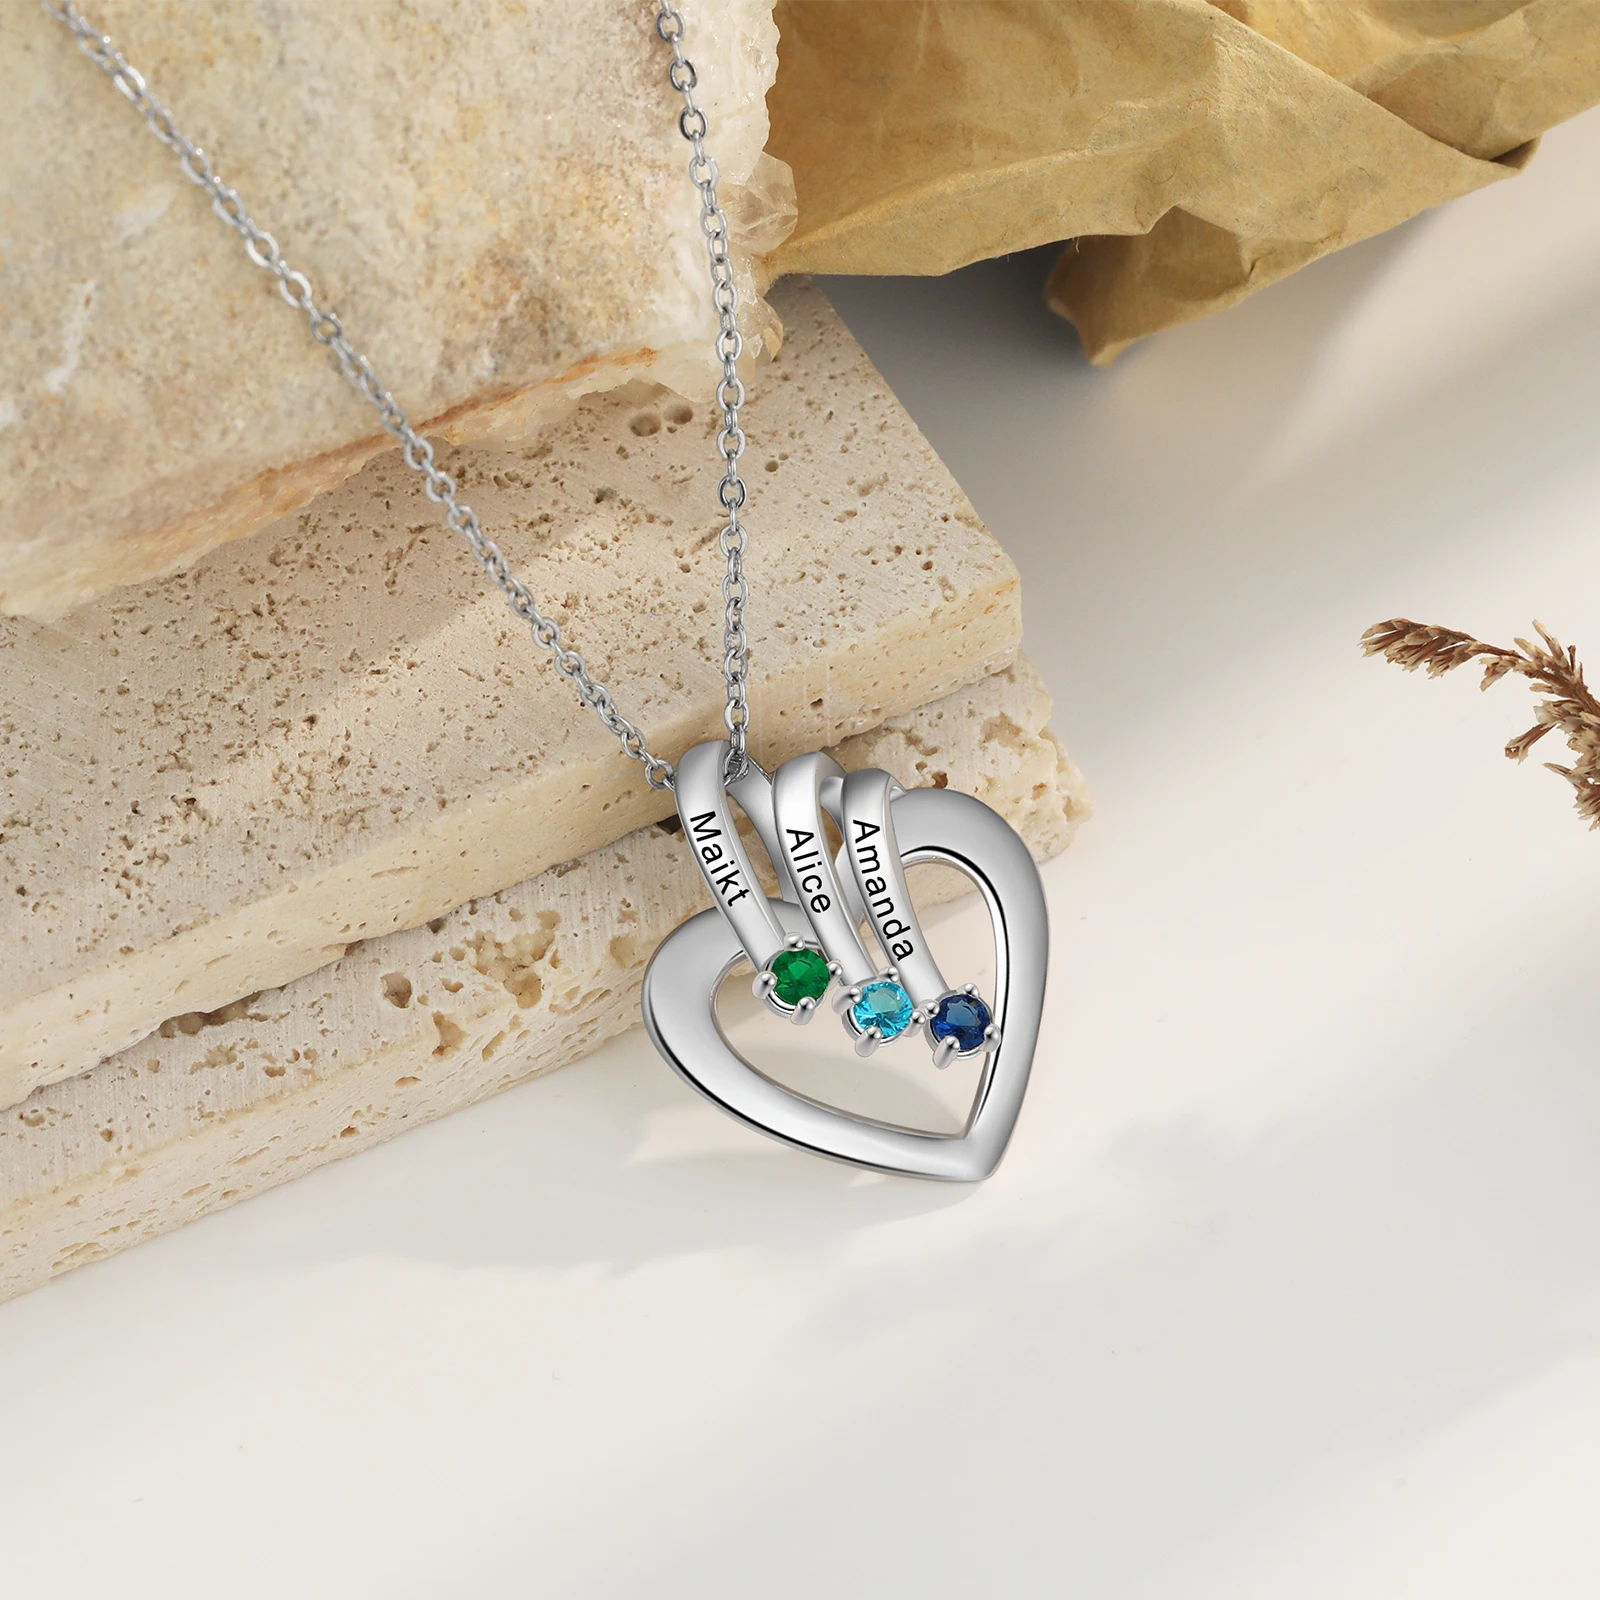 Индивидуальный кулон в виде сердца с 1-3 камнями рождения, персонализированное имя, выгравированное на цепочке, ожерелье, рождественские подарки для мам, бабушки, Наны - 3